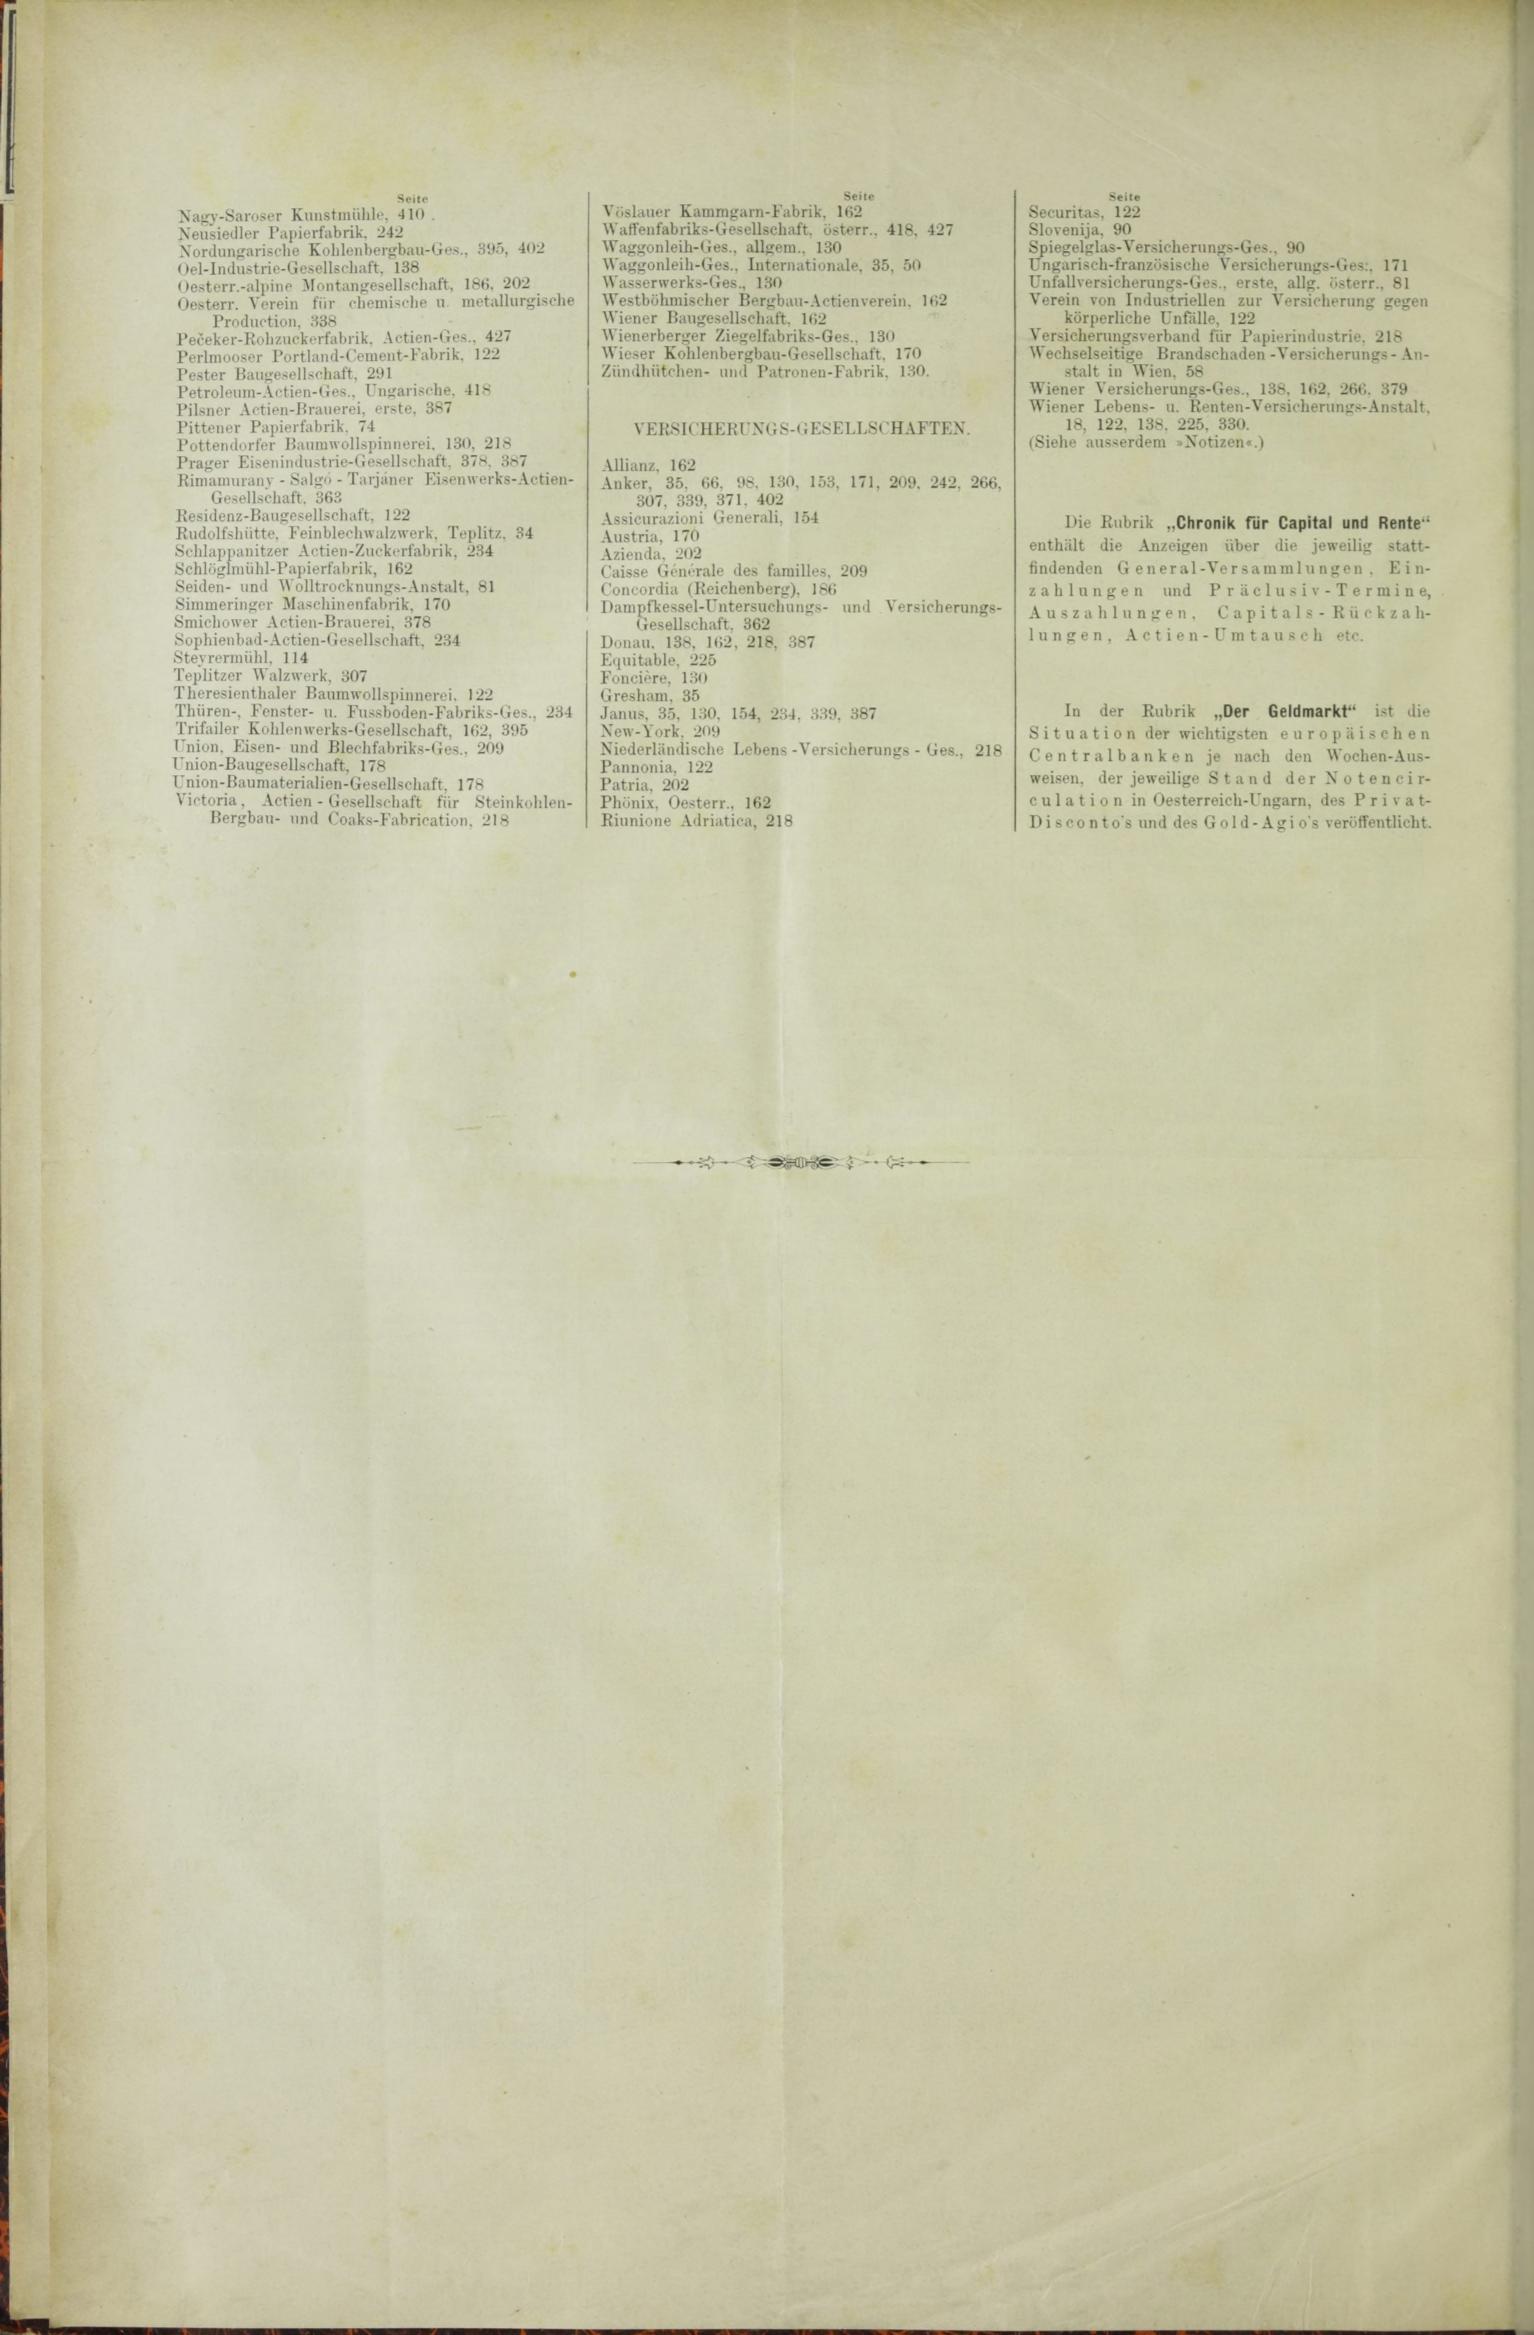 Der Tresor 26.02.1885 - Seite 12